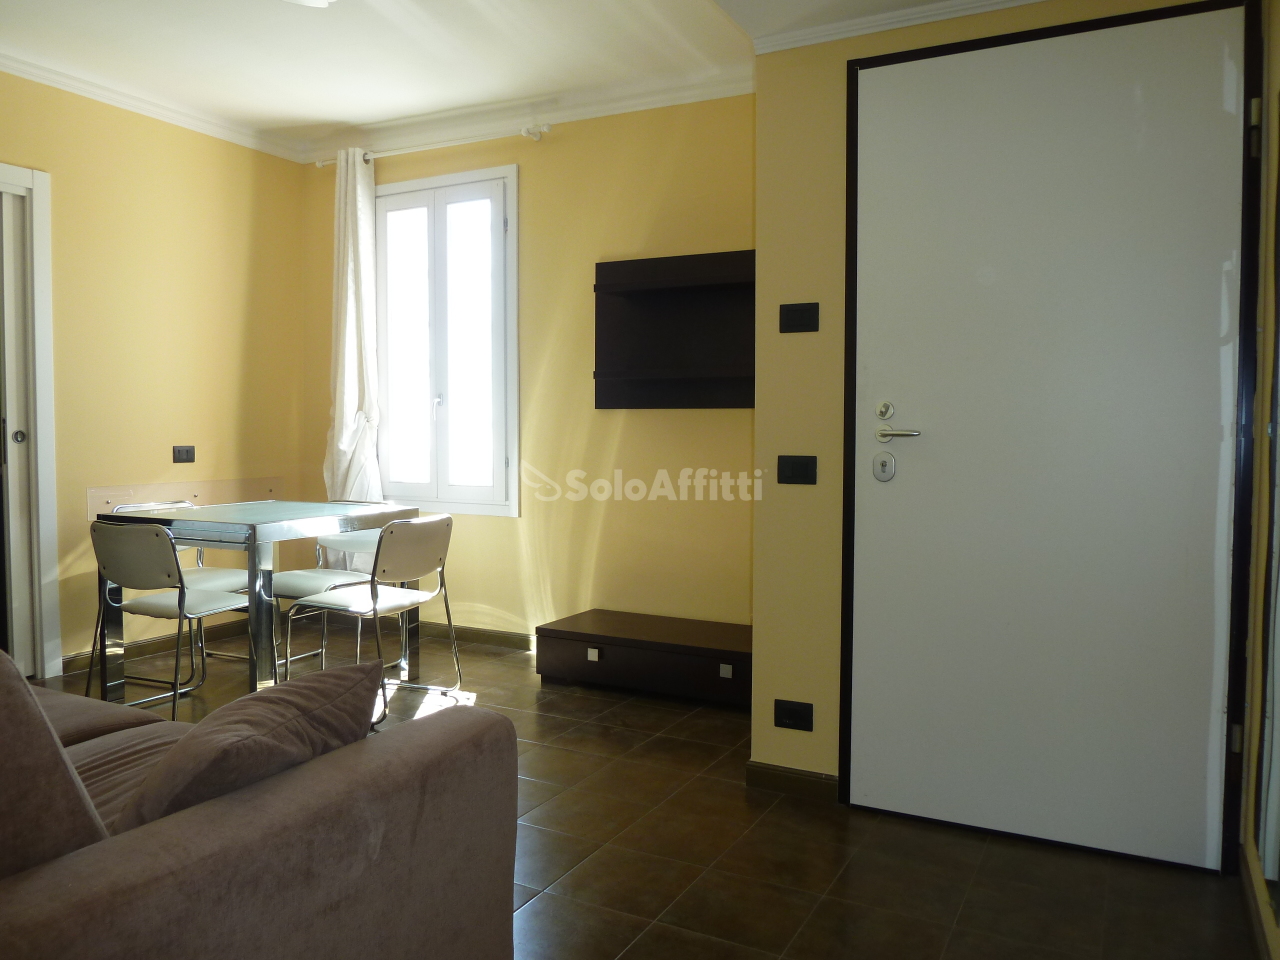 Appartamento in affitto a SanRemo, 2 locali, prezzo € 550 | PortaleAgenzieImmobiliari.it